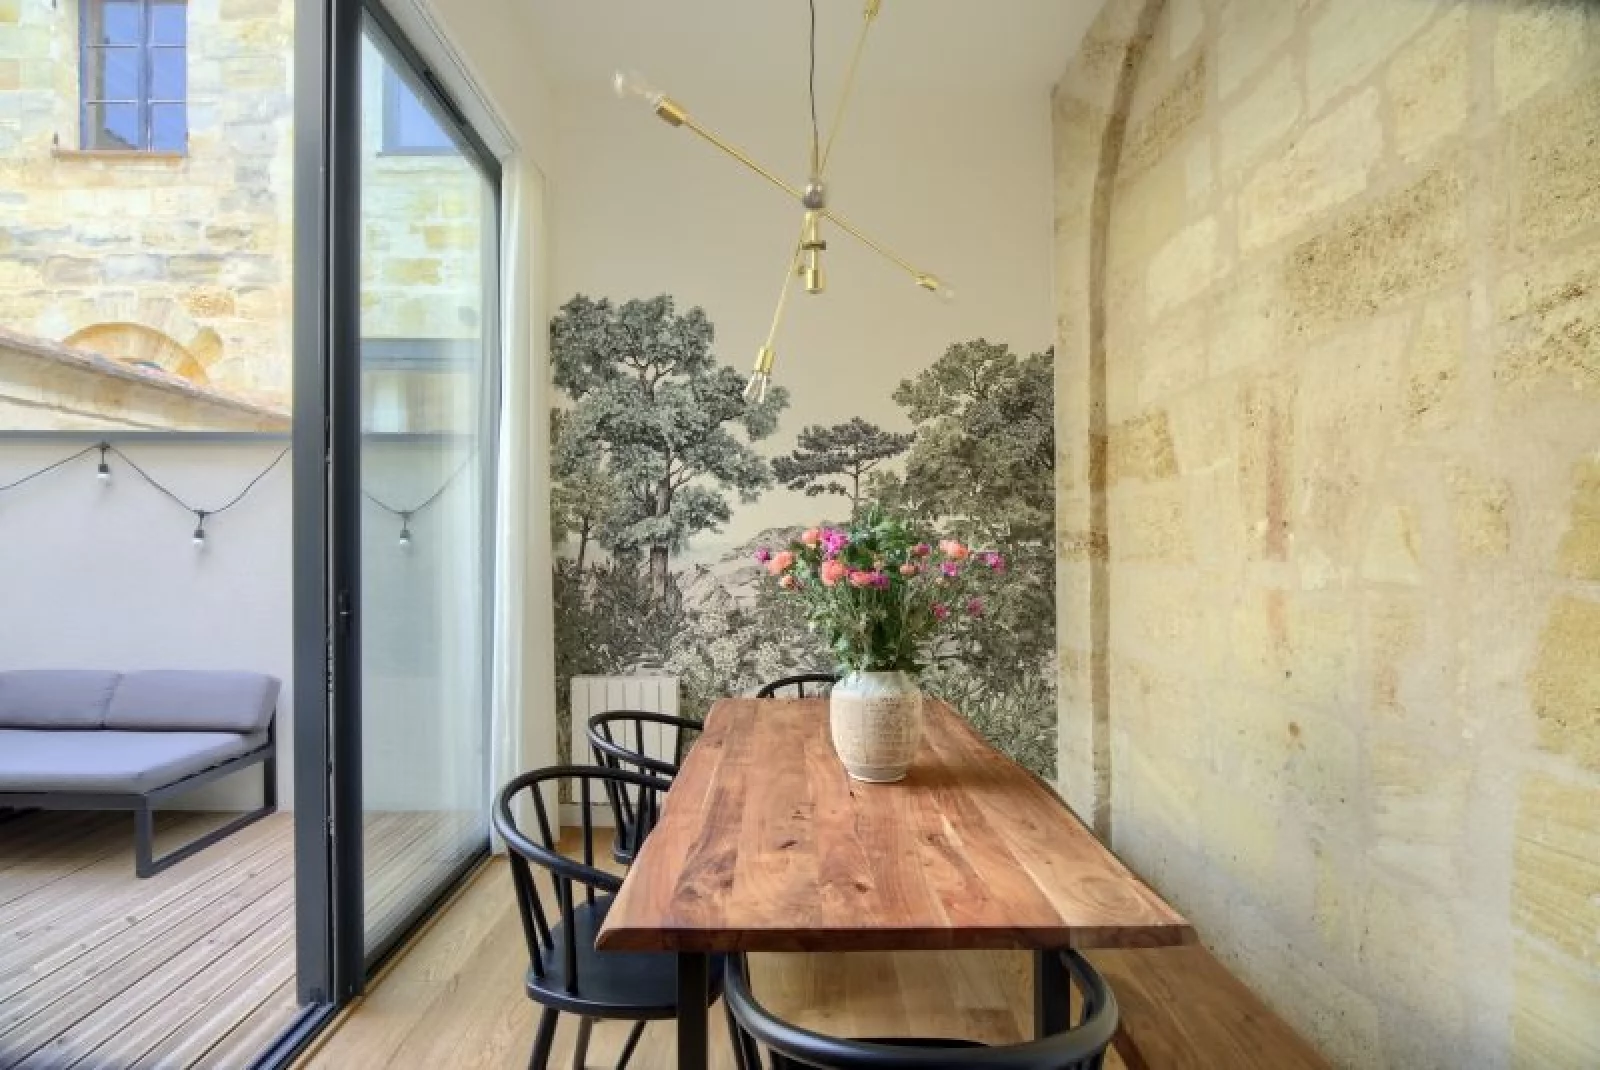 Location appartement meublé 3 pièces de 62m² avec terrasse (Bordeaux - Chartrons)